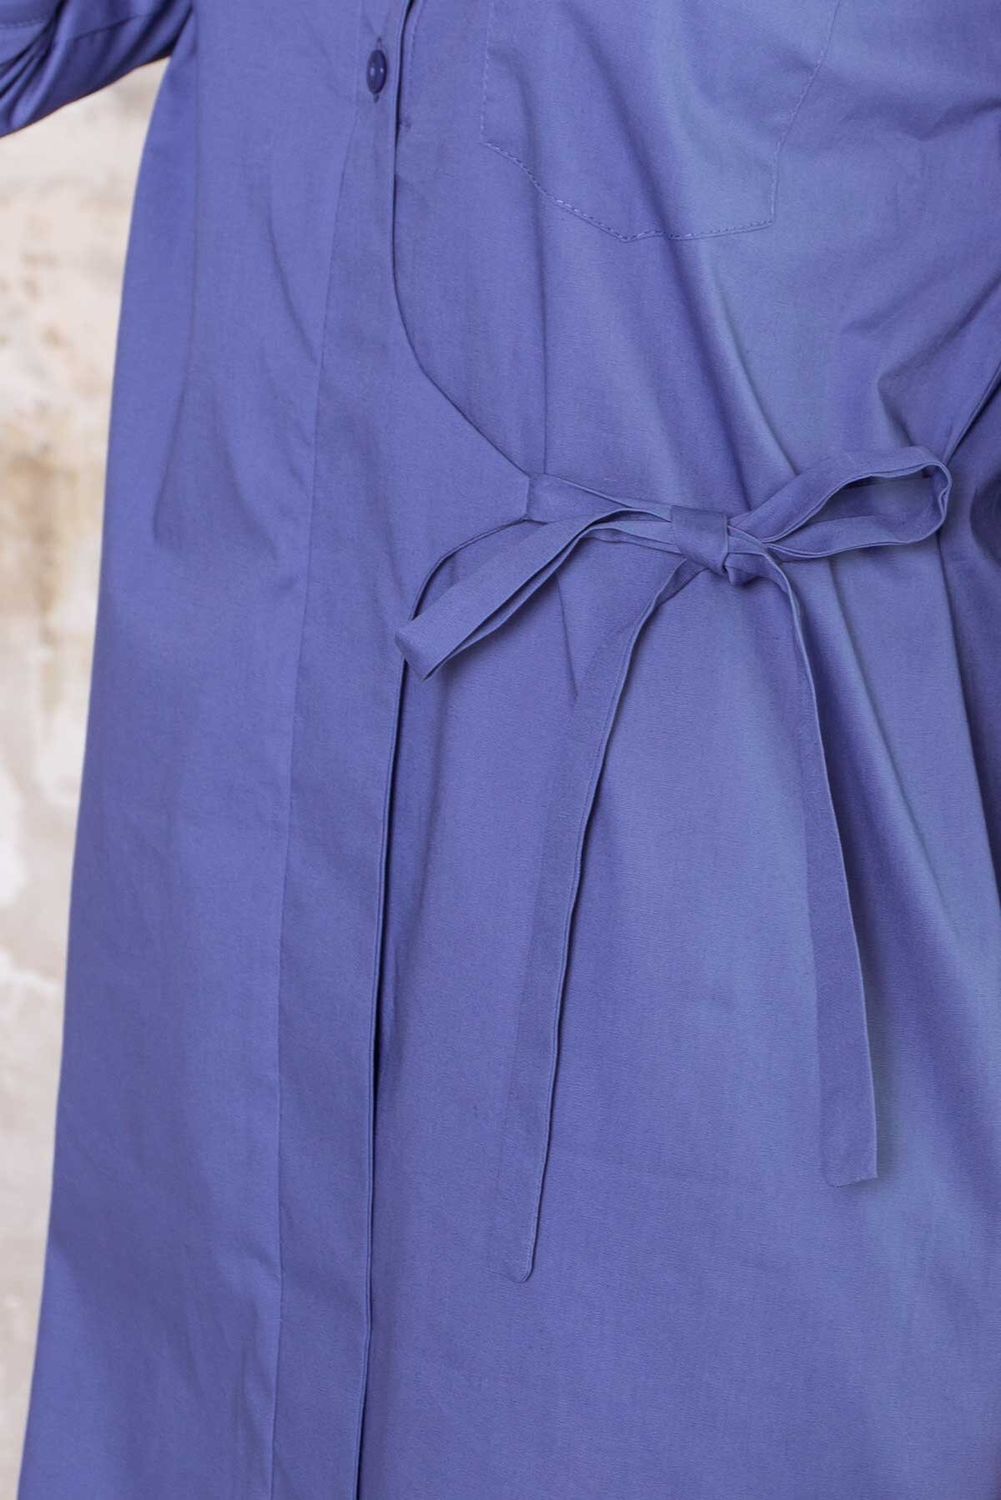 Хлопковое платье рубашка прямого кроя синее - фото